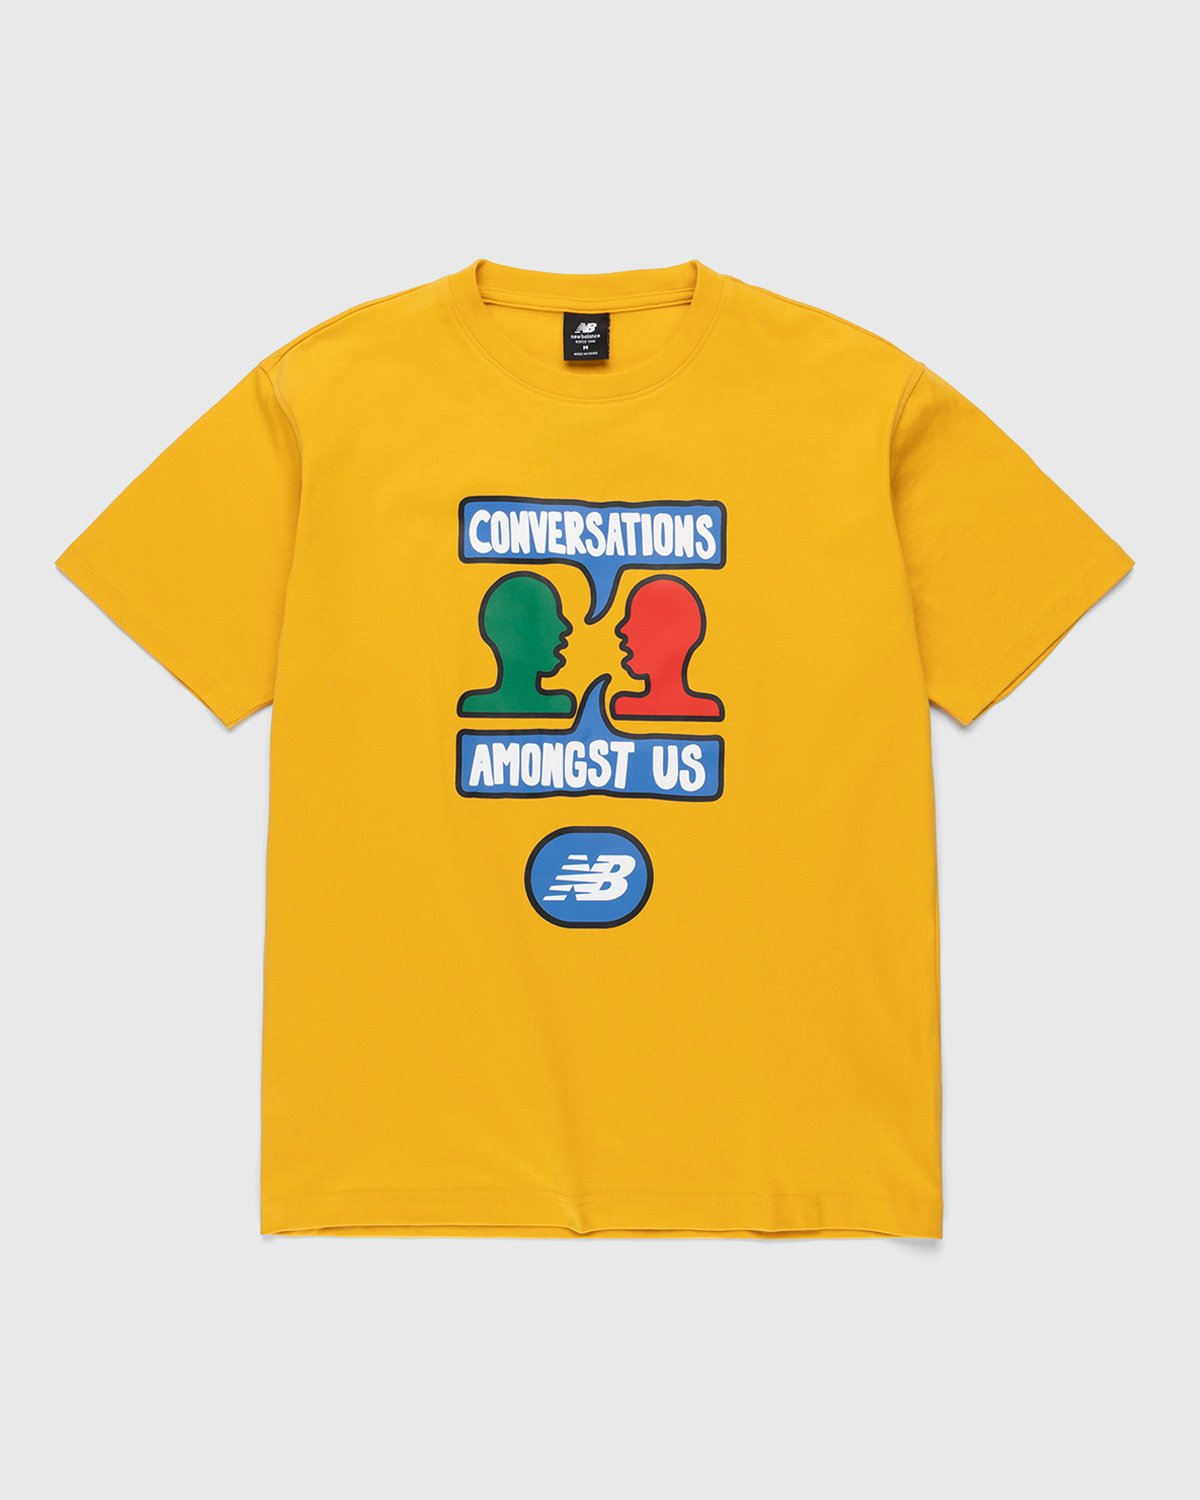 New Balance - Conversations Amongst Us T-Shirt Aspen Yellow - Clothing - Yellow - Image 1